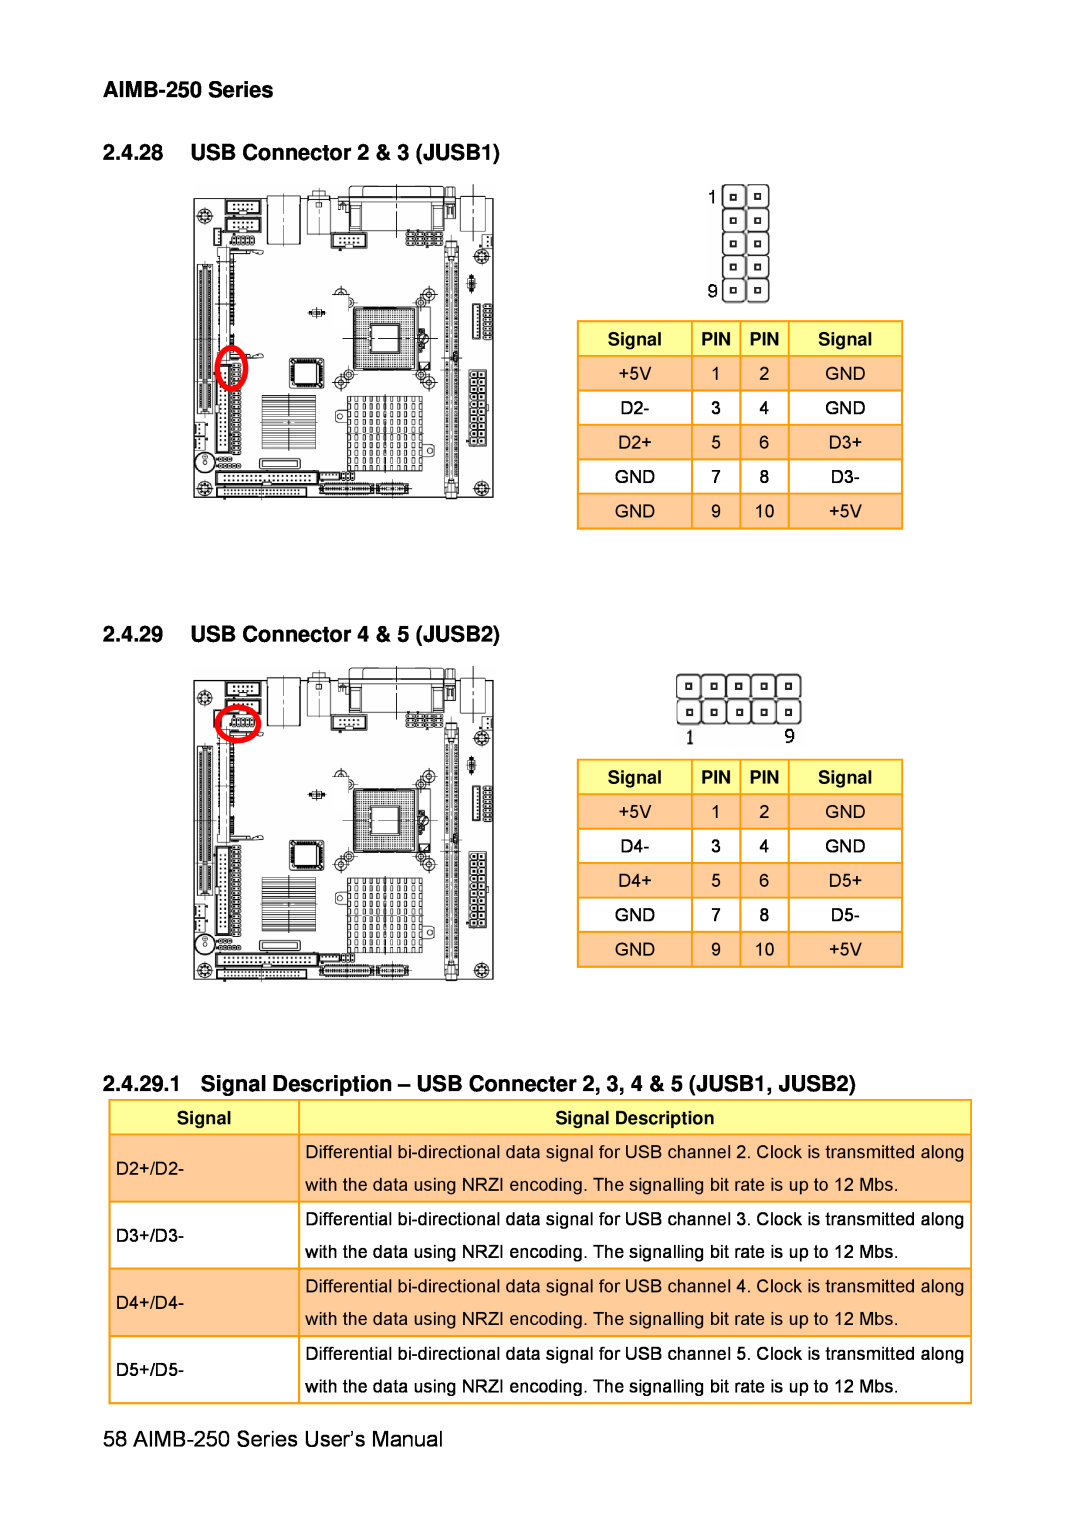 Advantech AIMB-250 Series 2.4.28 USB Connector 2 & 3 JUSB1, USB Connector 4 & 5 JUSB2, Signal Description 